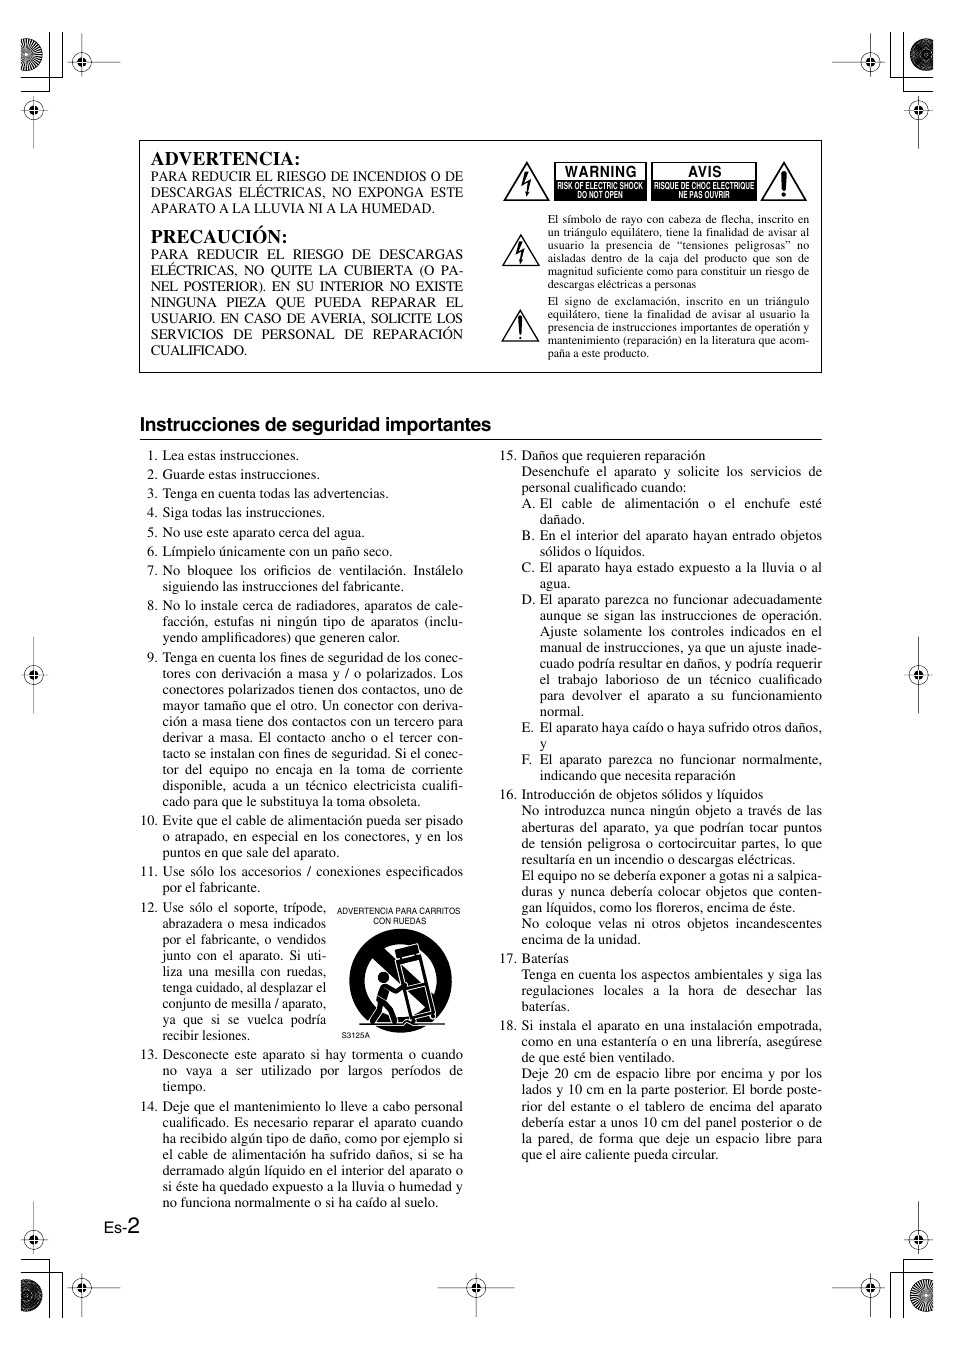 Español, Primeros pasos, Instrucciones de seguridad importantes | Advertencia, Precaución | Panasonic SKS-HT750 User Manual | Page 20 / 28